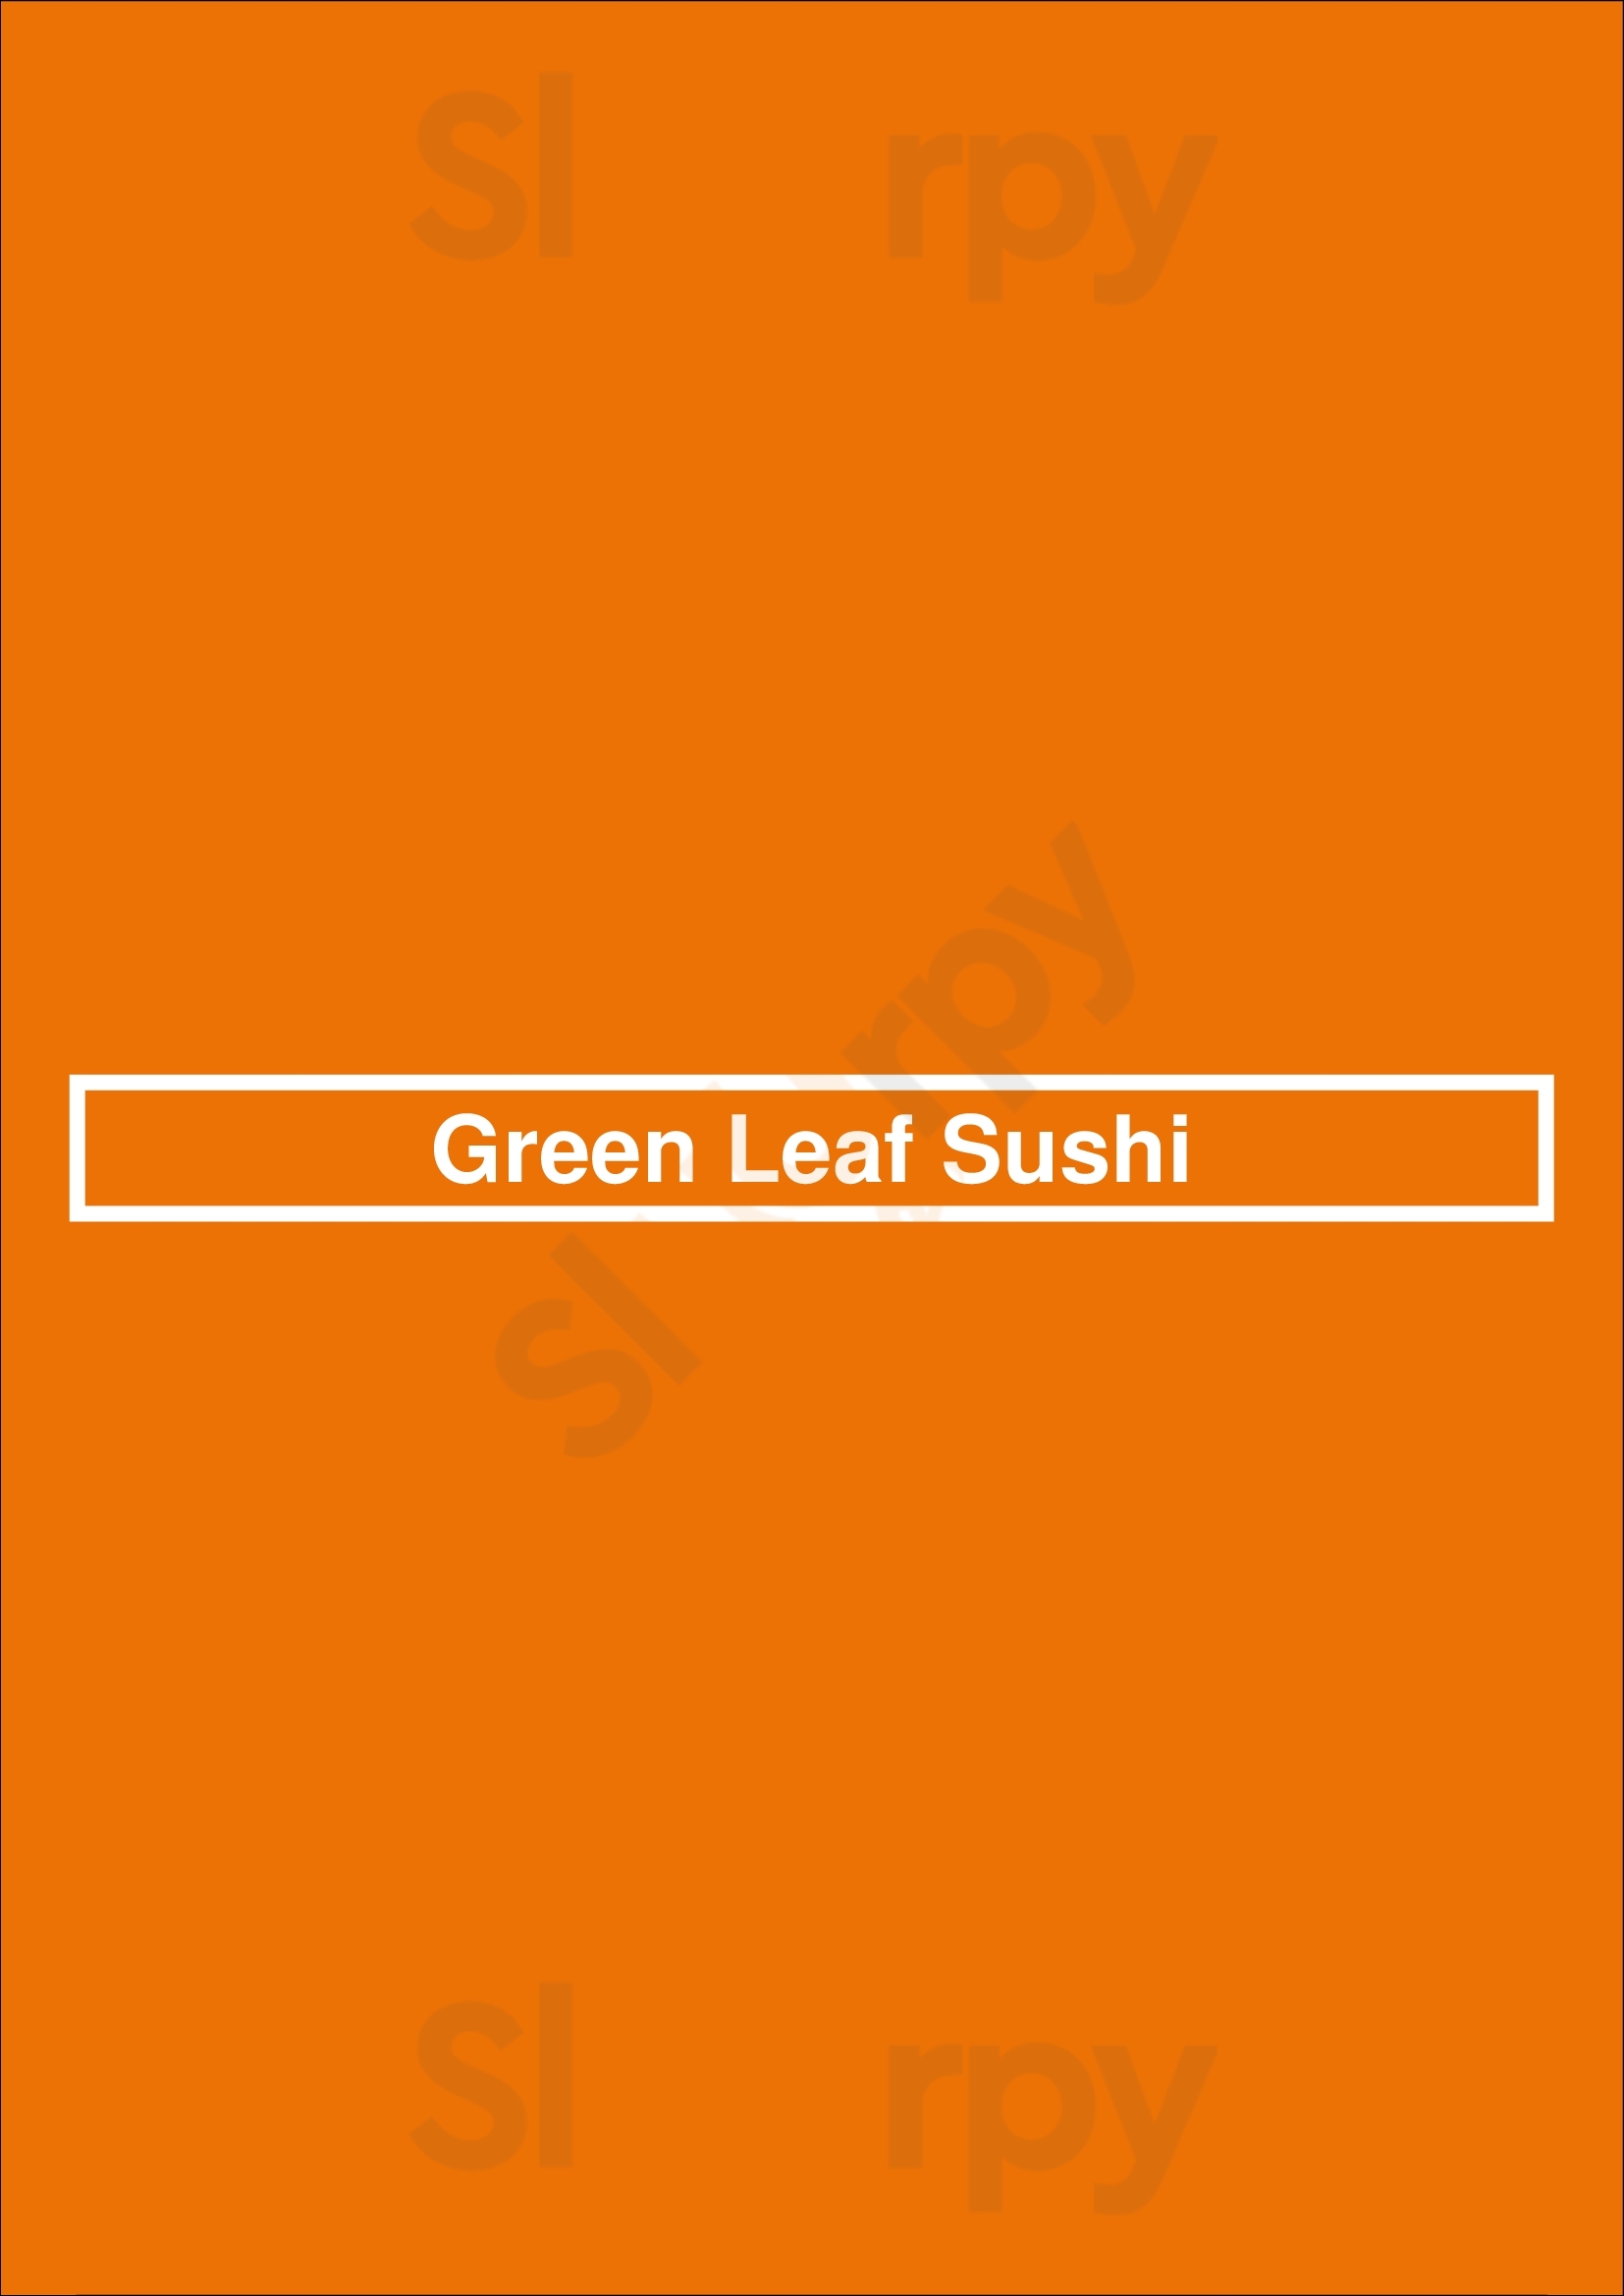 Green Leaf Sushi Vancouver Menu - 1